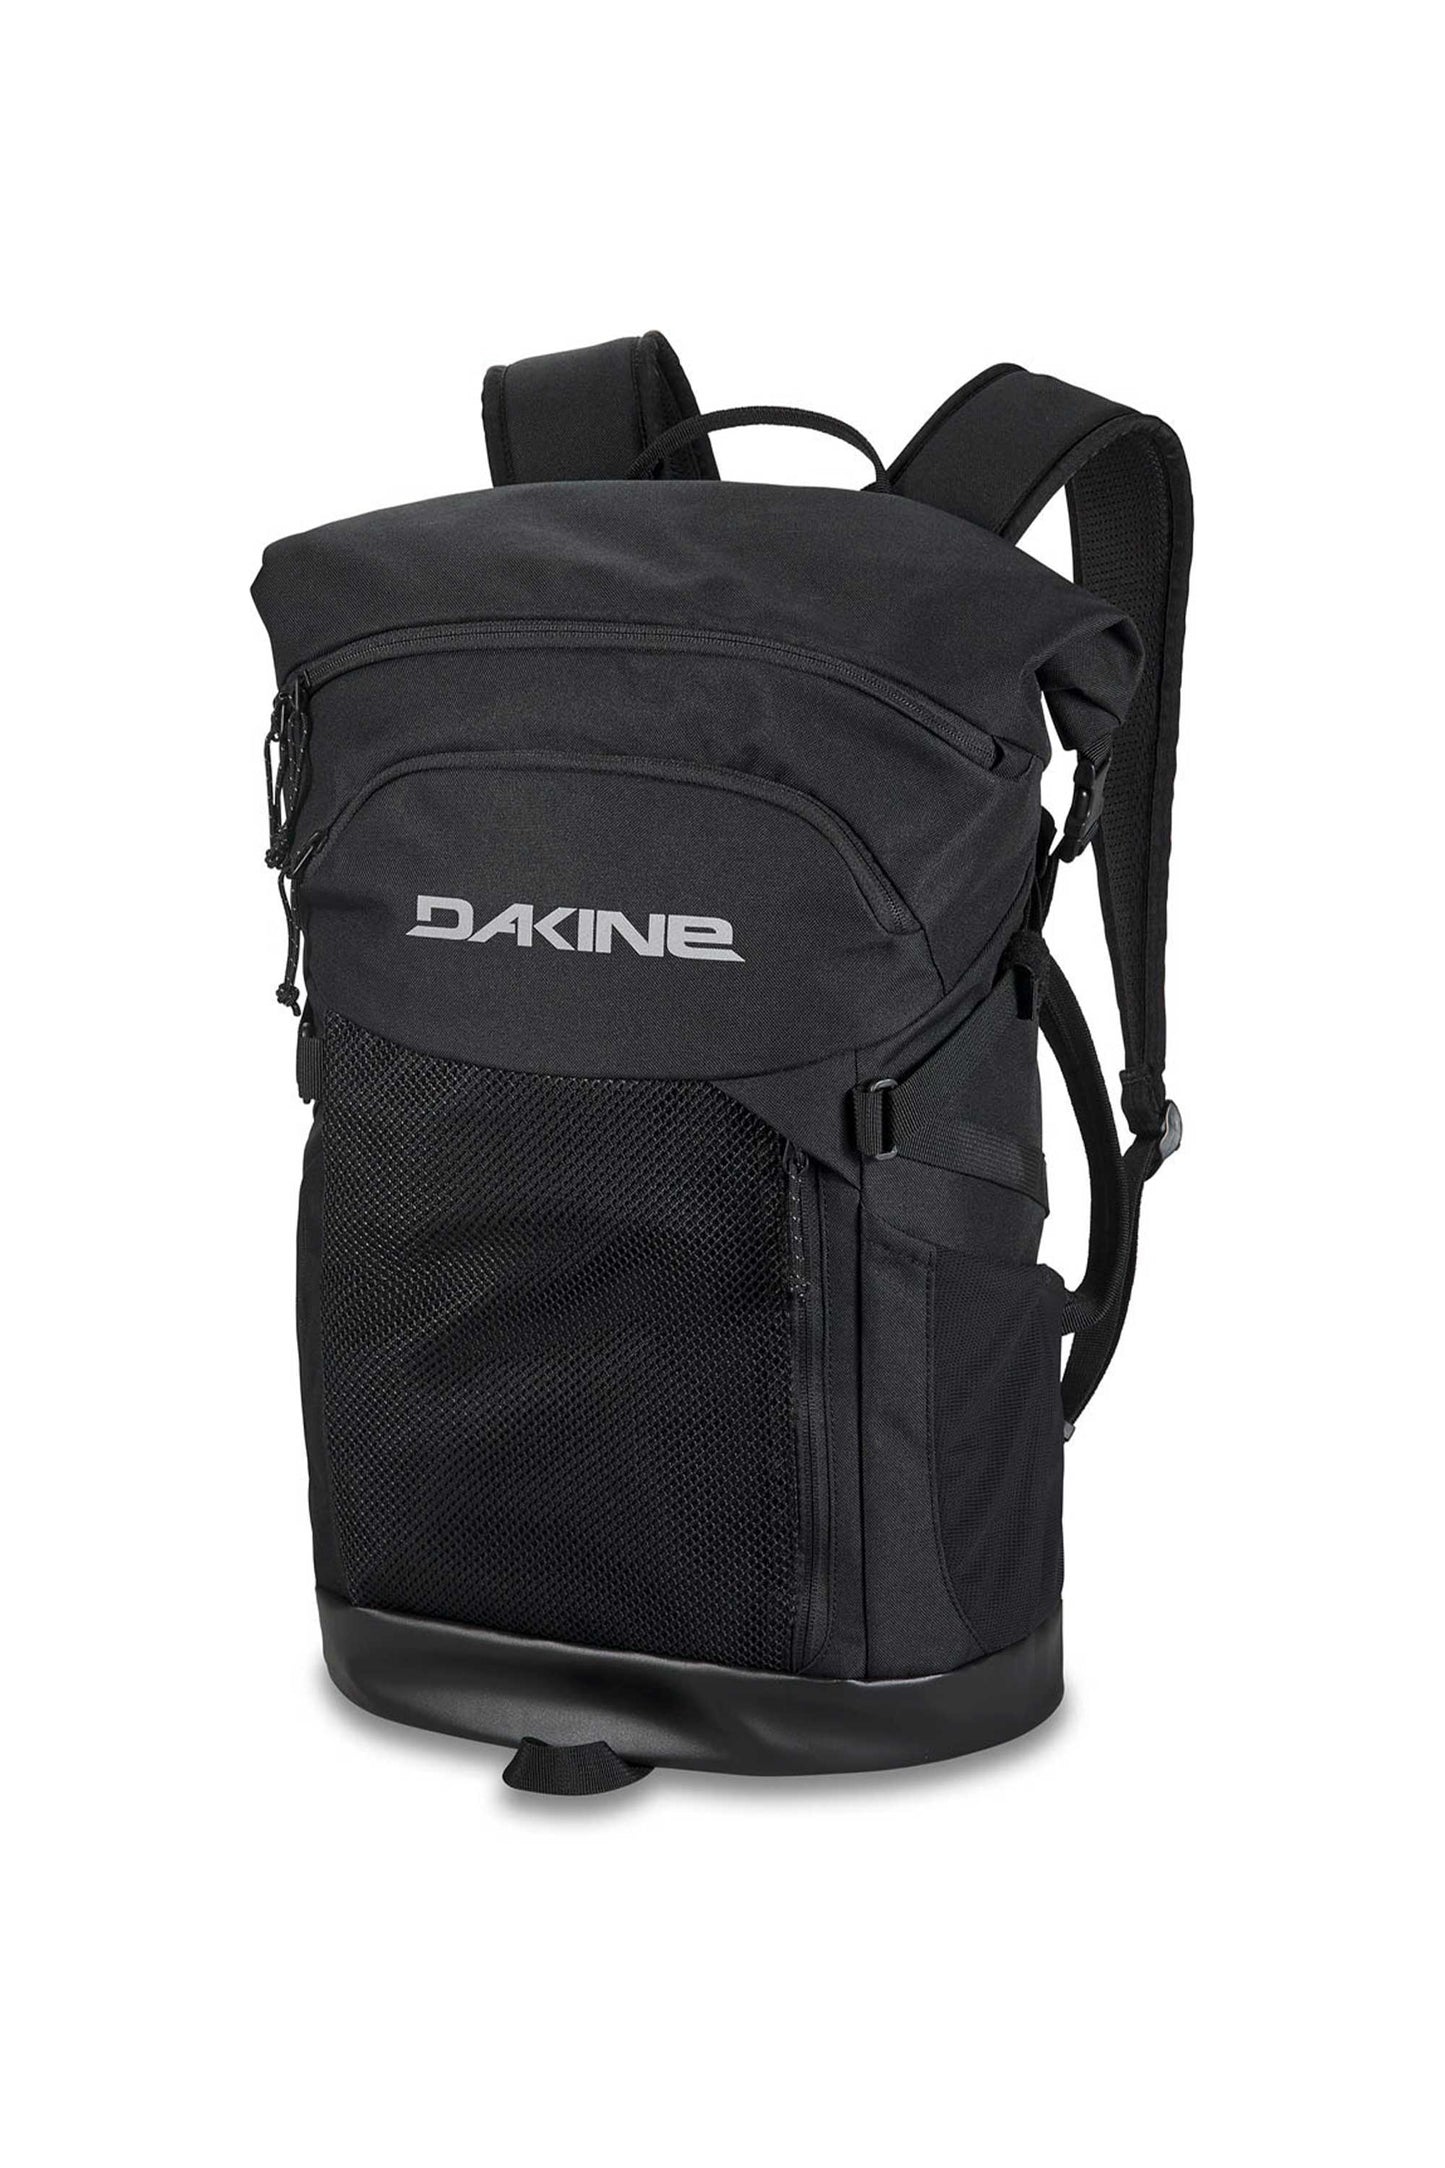 Pukas-Surf-Shop-Dakine-backpack-Mission-Surf-Pack-30L-Ruc